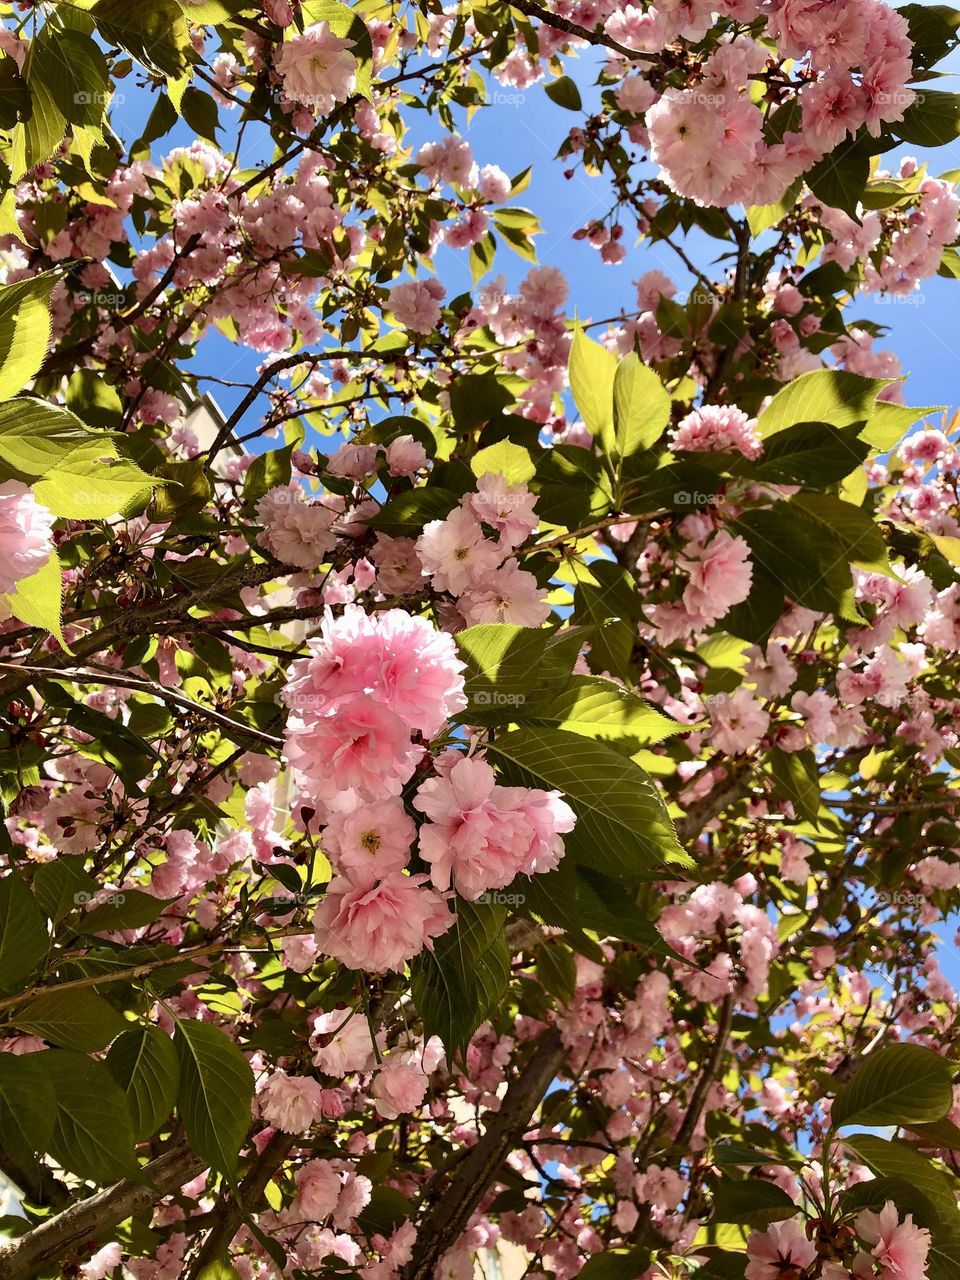 Spring flowers in Virginia 🌸